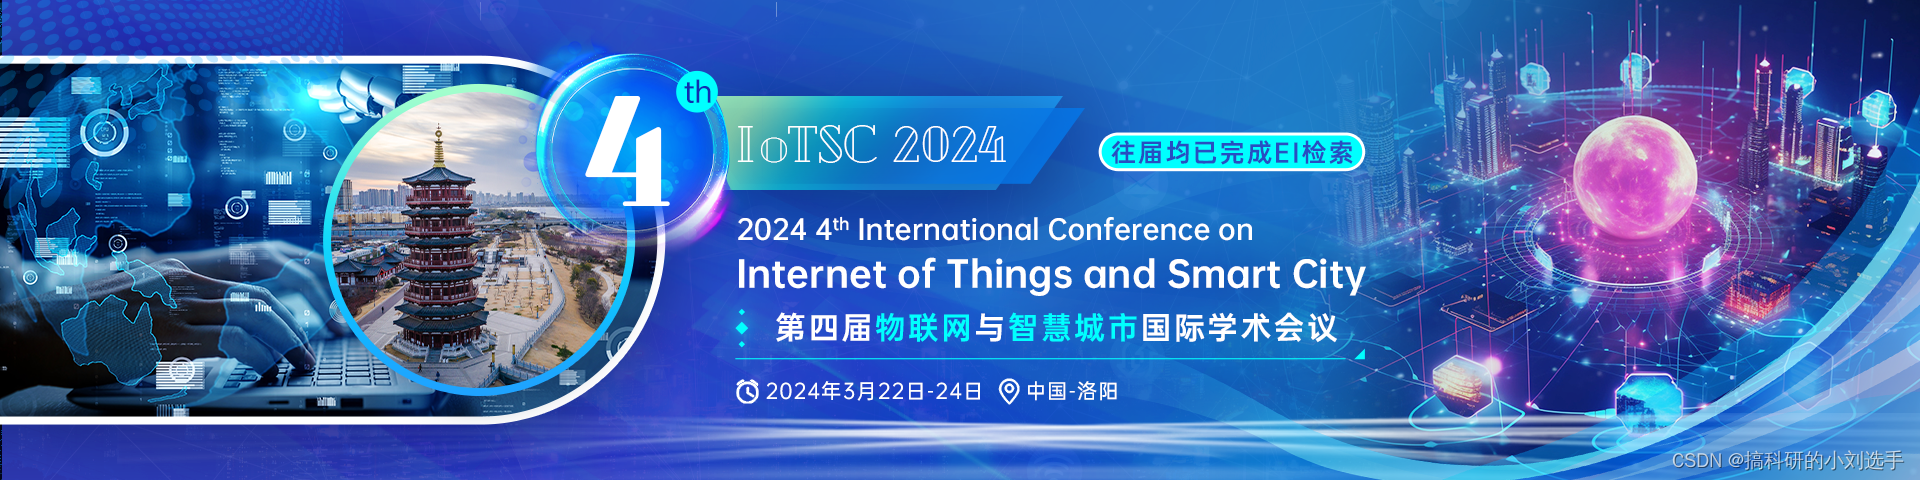 【EI会议投稿】第四届物联网与智慧城市国际学术会议（IoTSC 2024）